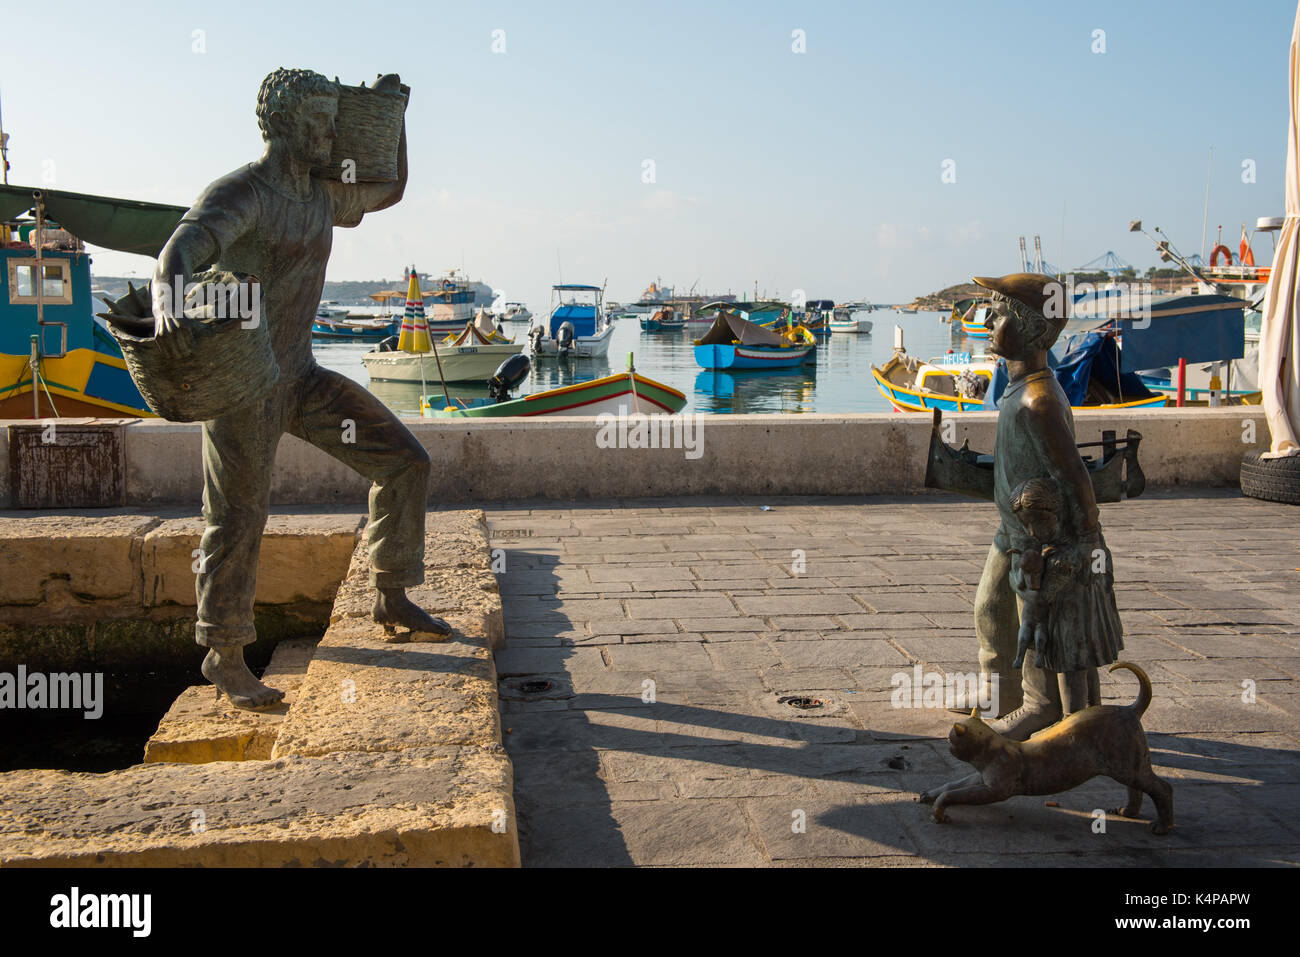 Marsaxlokk, Malte - 23 août 2017 : statue en bronze représentant un pêcheur et un jeune garçon avec un chat dans le port de Marsaxlokk bay dans l'île de Malte Banque D'Images